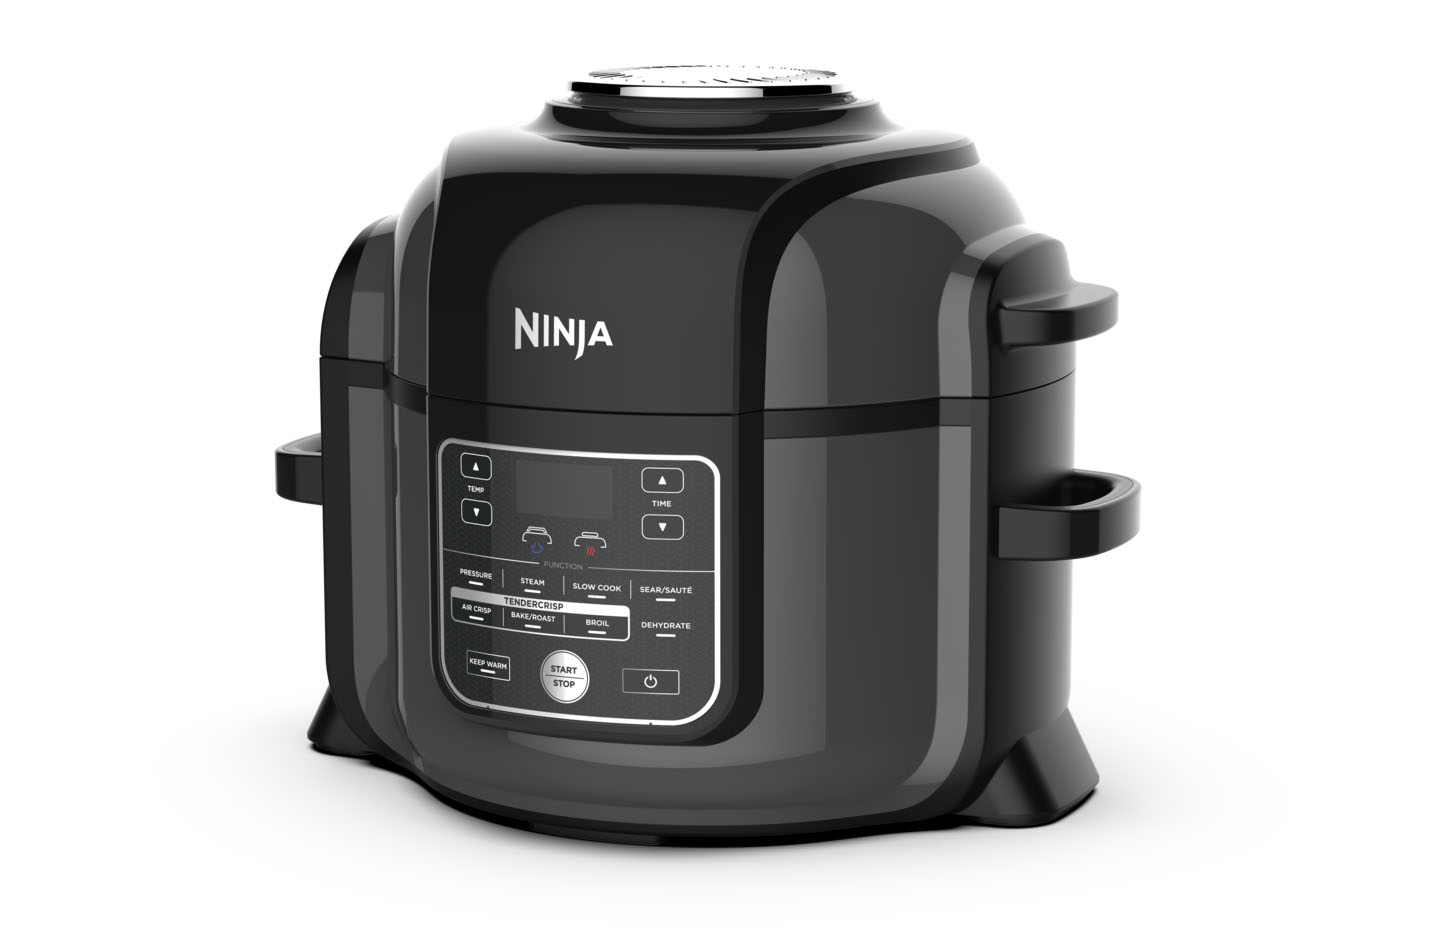  Ninja OP305 Foodi 6.5 Quart Pressure Cooker That